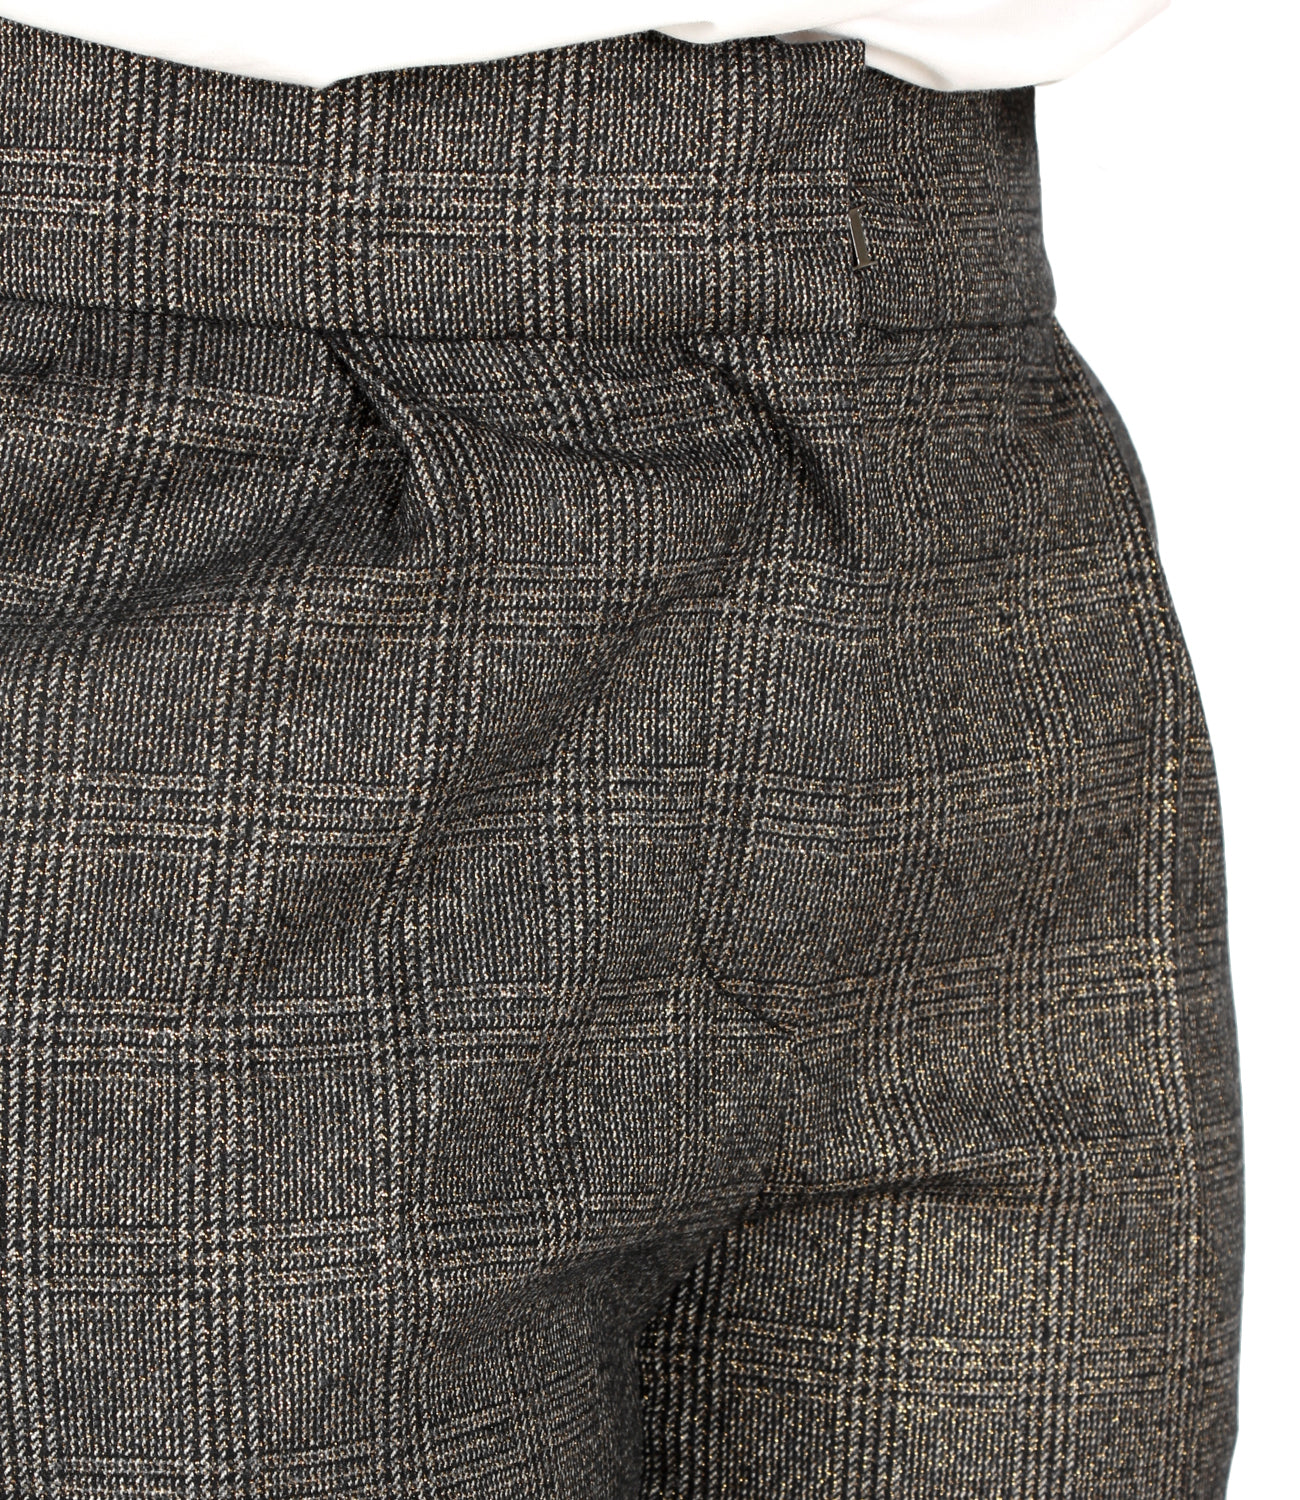 Pantalone "Soft Volume" in sparkling glen check di lana vergine